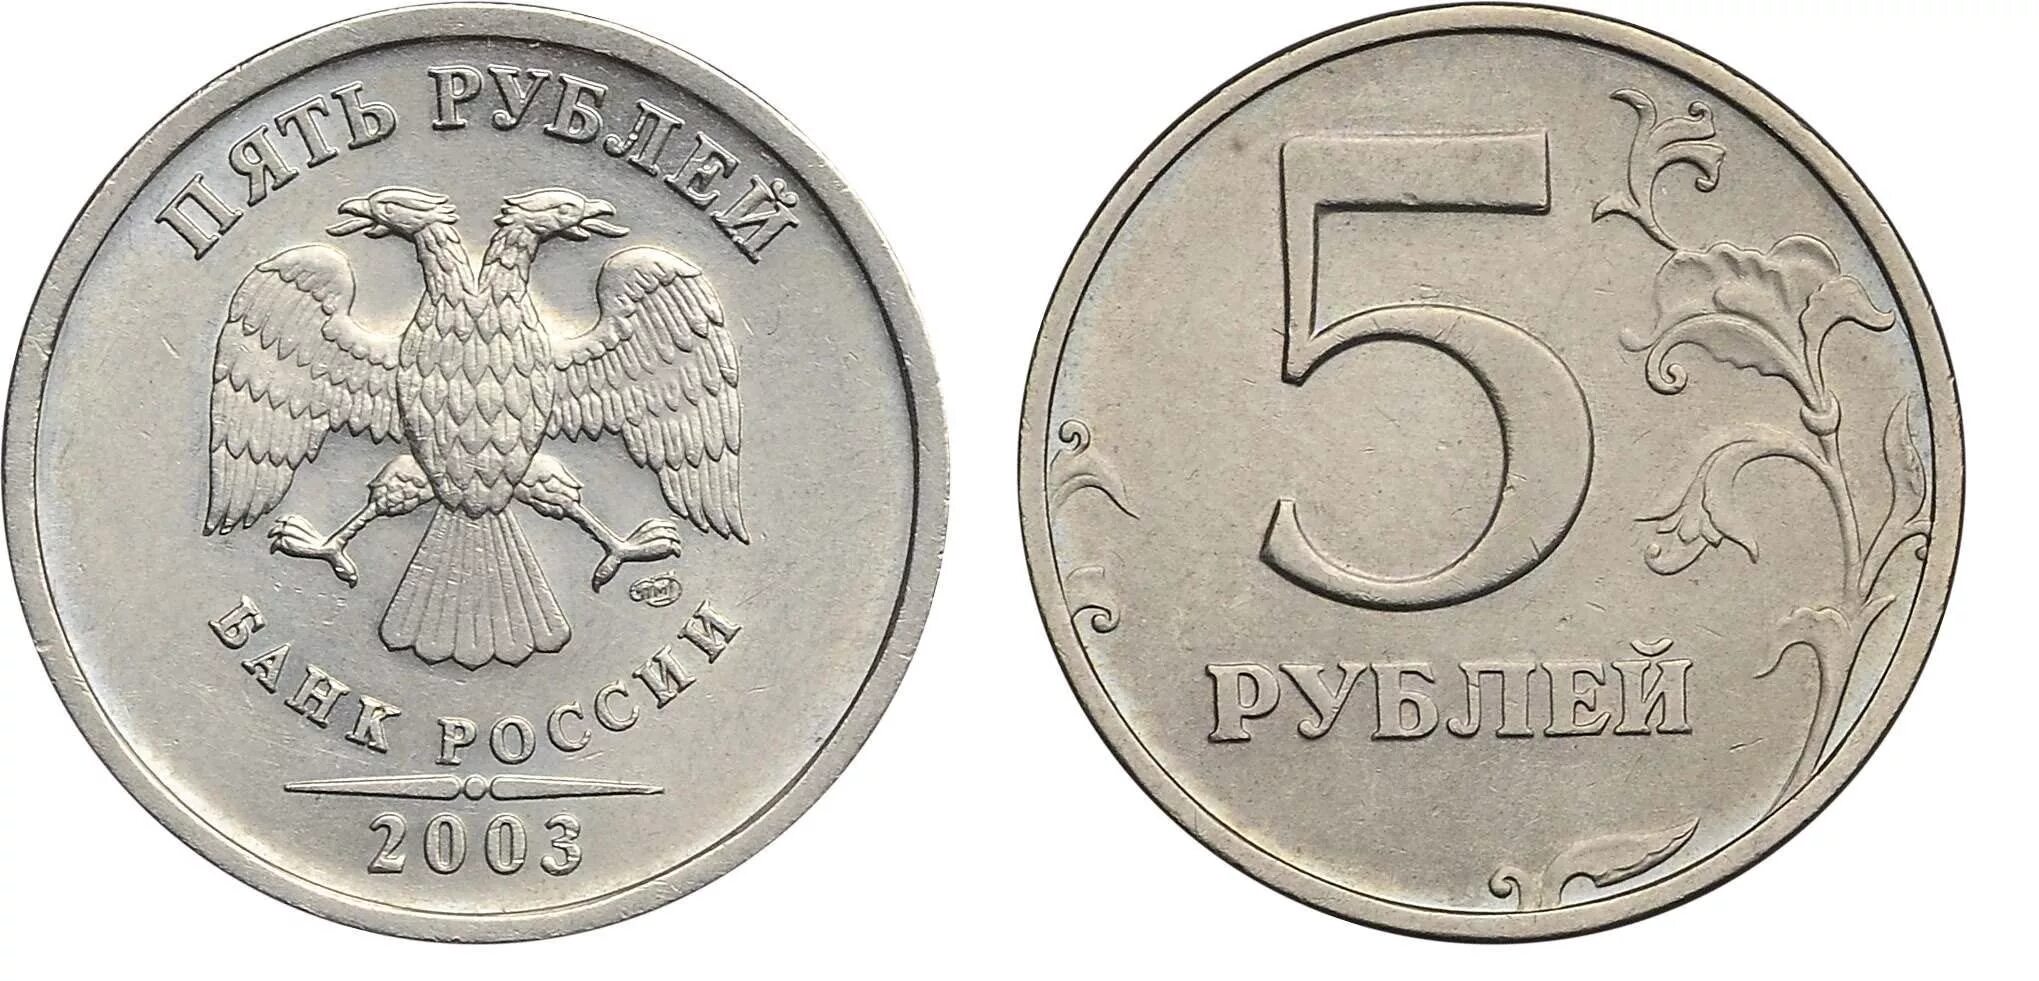 5 рублей стороны. 5 Рублей 1998 Московский монетный двор. 5 Рублей 1998 ММД. 5 Рублей 2008 СПМД. 5 Рублей 2008 года СПМД.